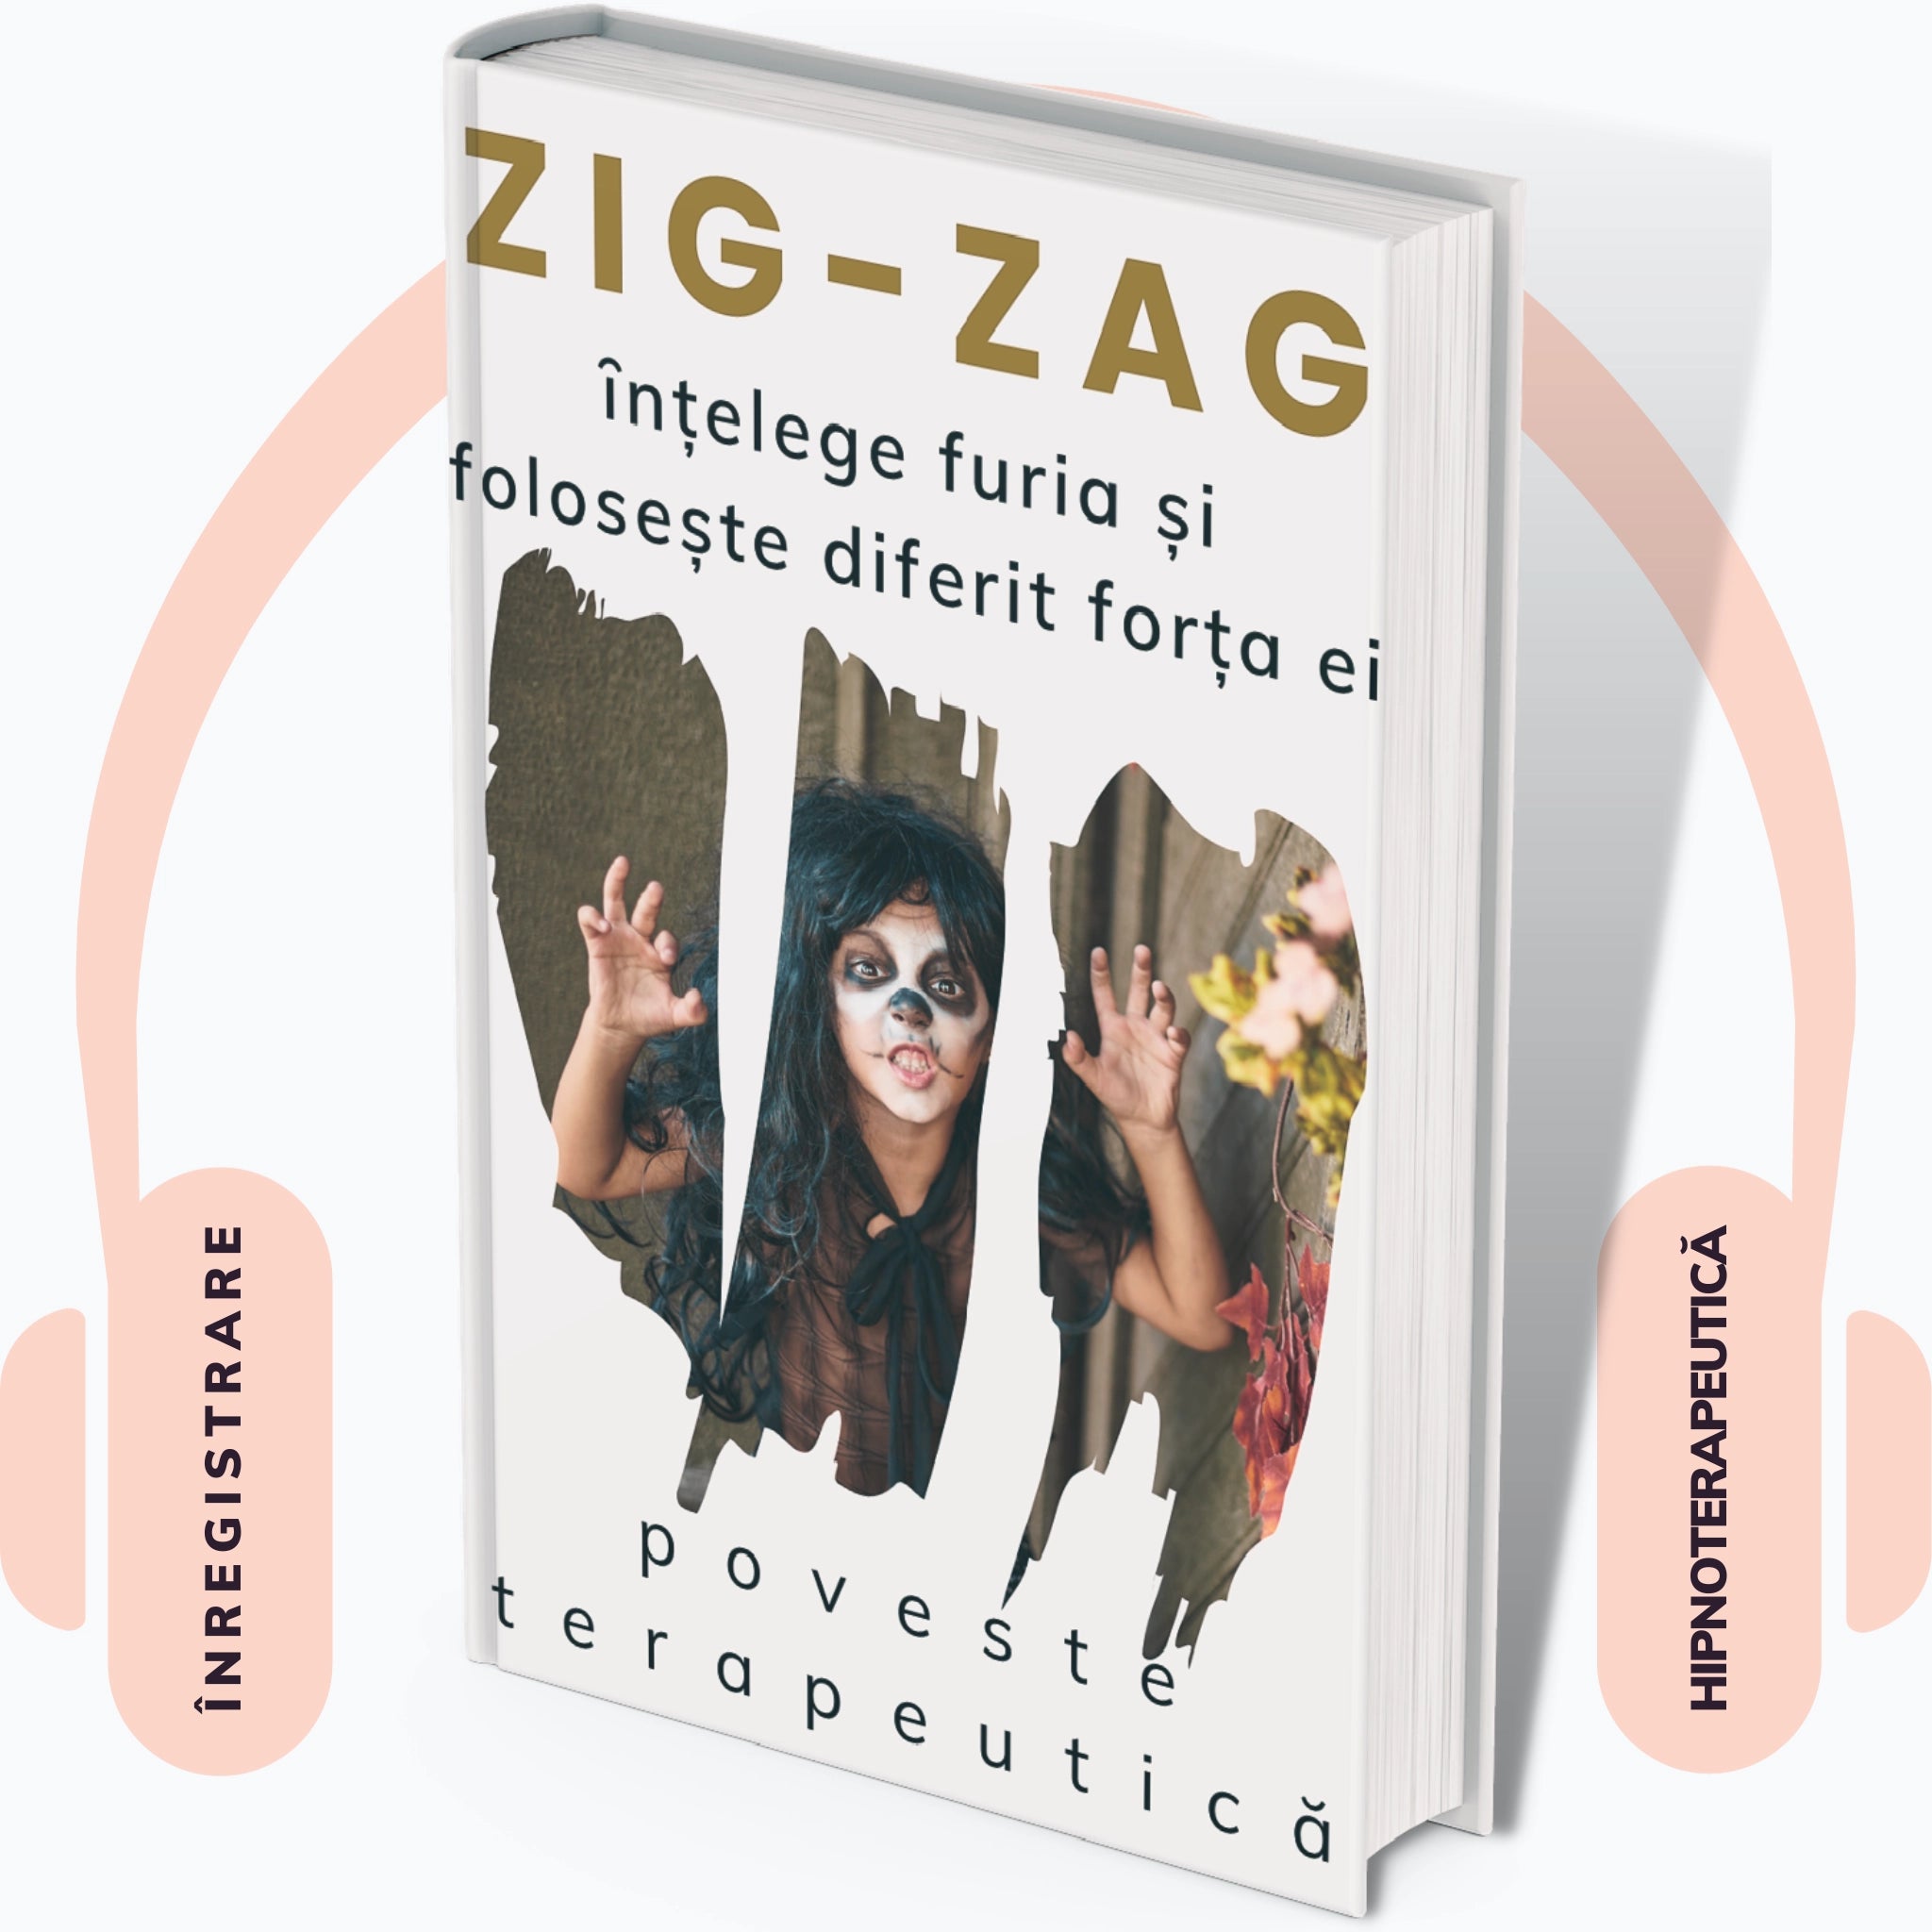 Coperta audiobook "Zig-Zag: poveste terapeutica pentru managementul furiei"